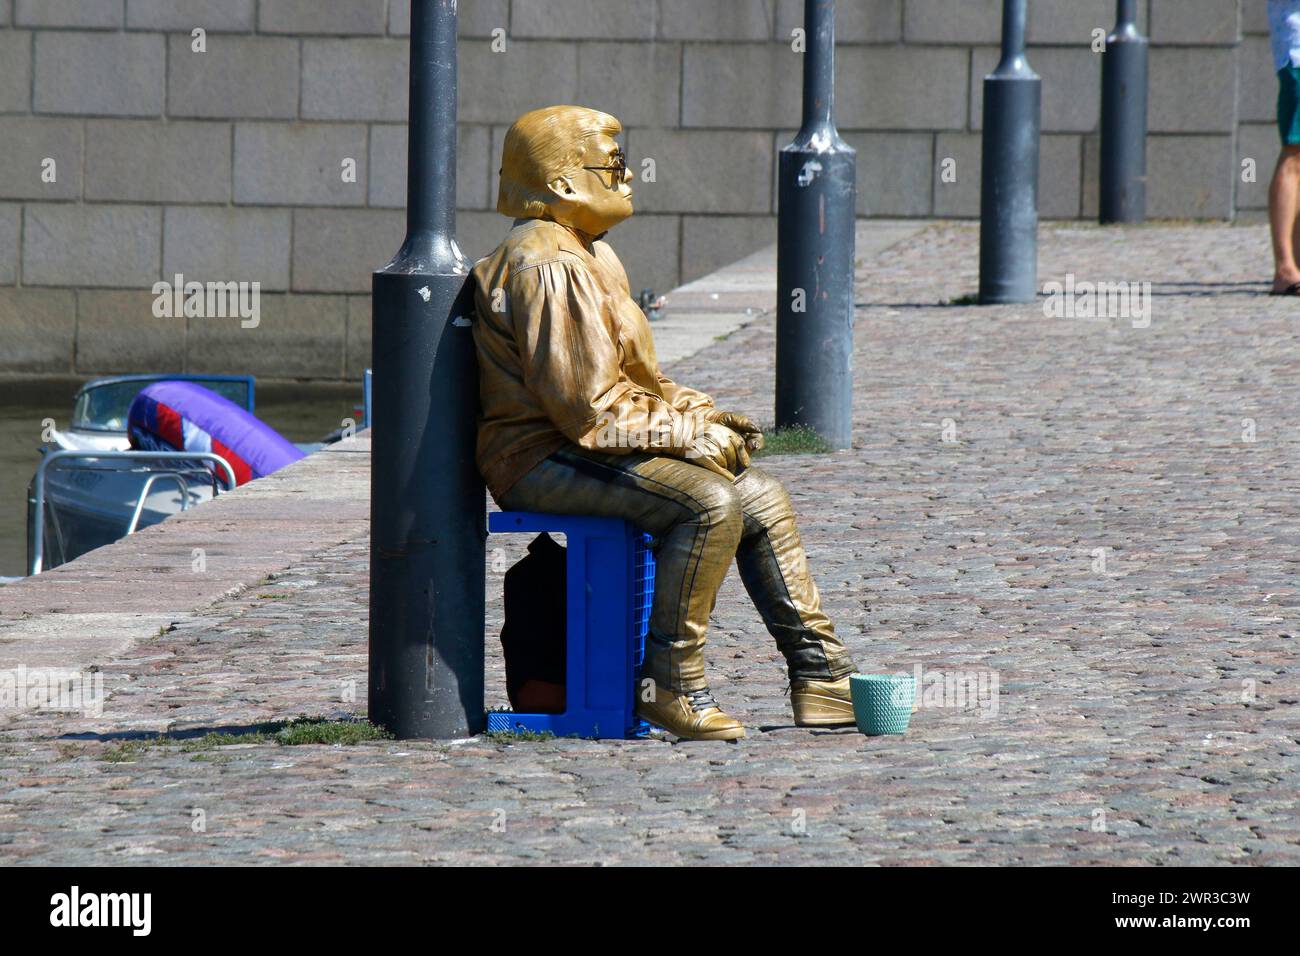 ein Schausteller, der sich als goldener Elvis Presley praesentiert, Helsinki (nur fuer redaktionelle Verwendung. Keine Werbung. Banca di riferimento: h Foto Stock